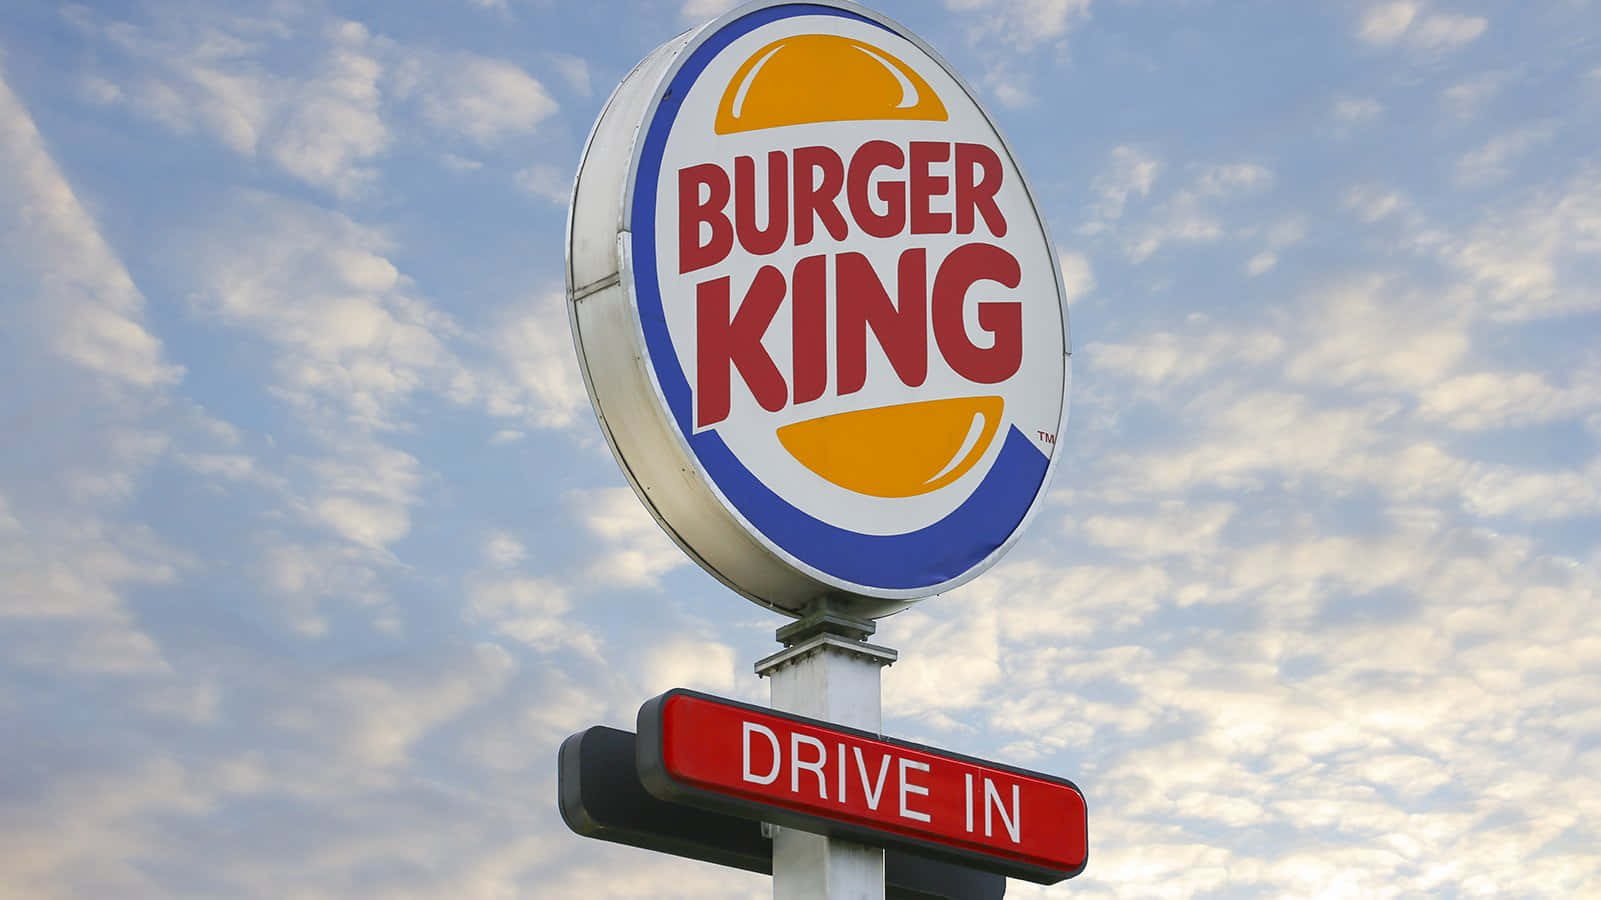 Oplevsmagen Af Kongen På Burger King!